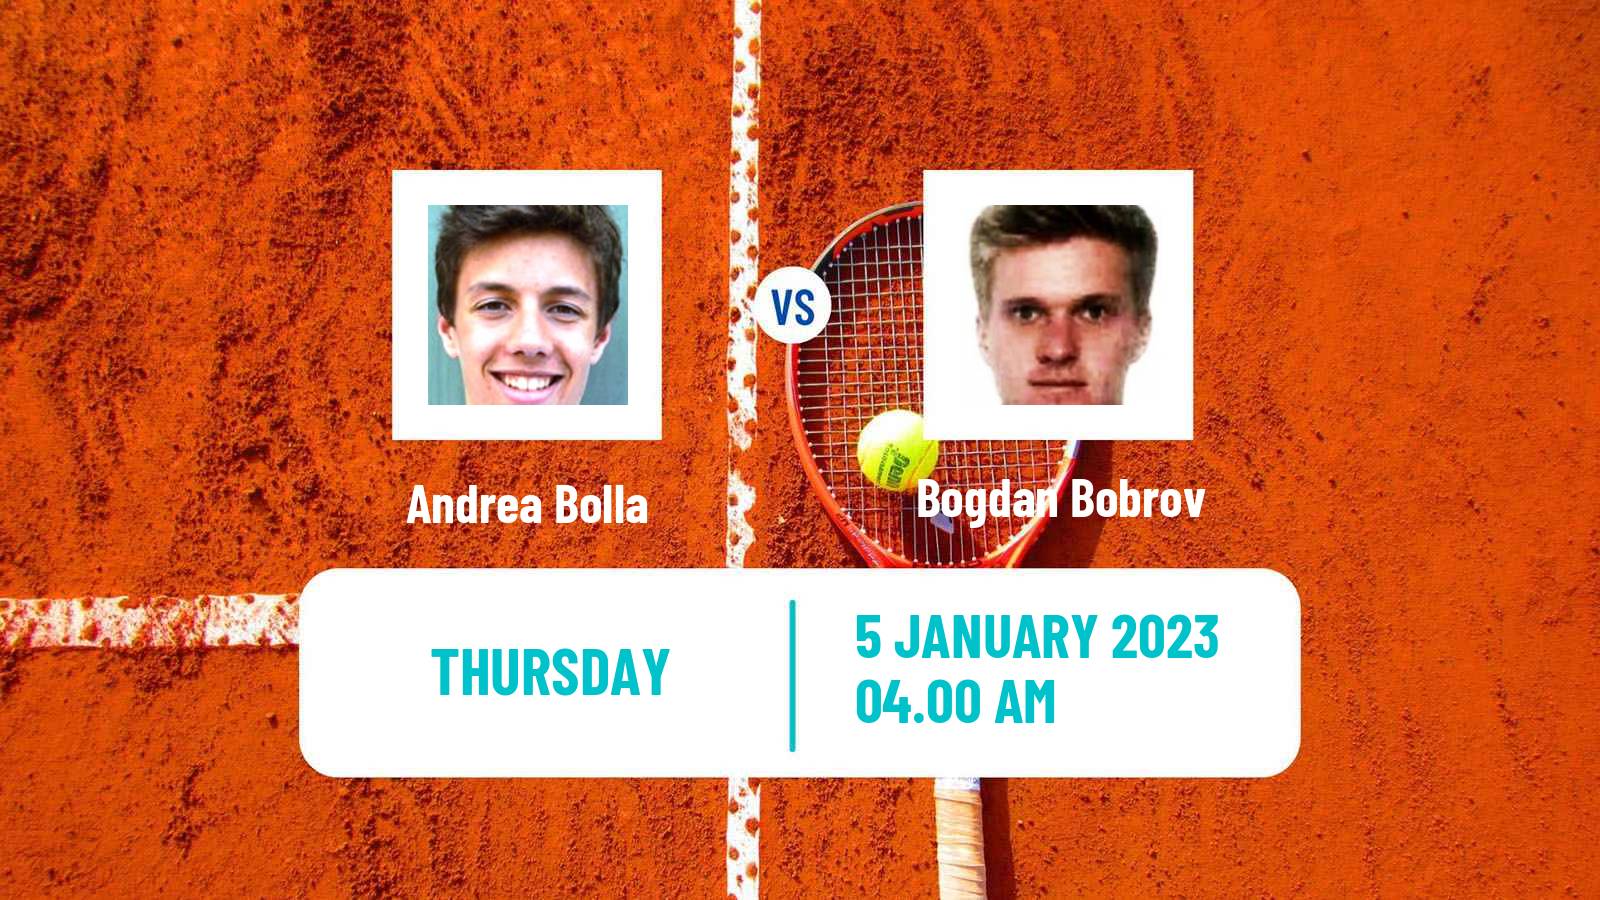 Tennis ITF Tournaments Andrea Bolla - Bogdan Bobrov